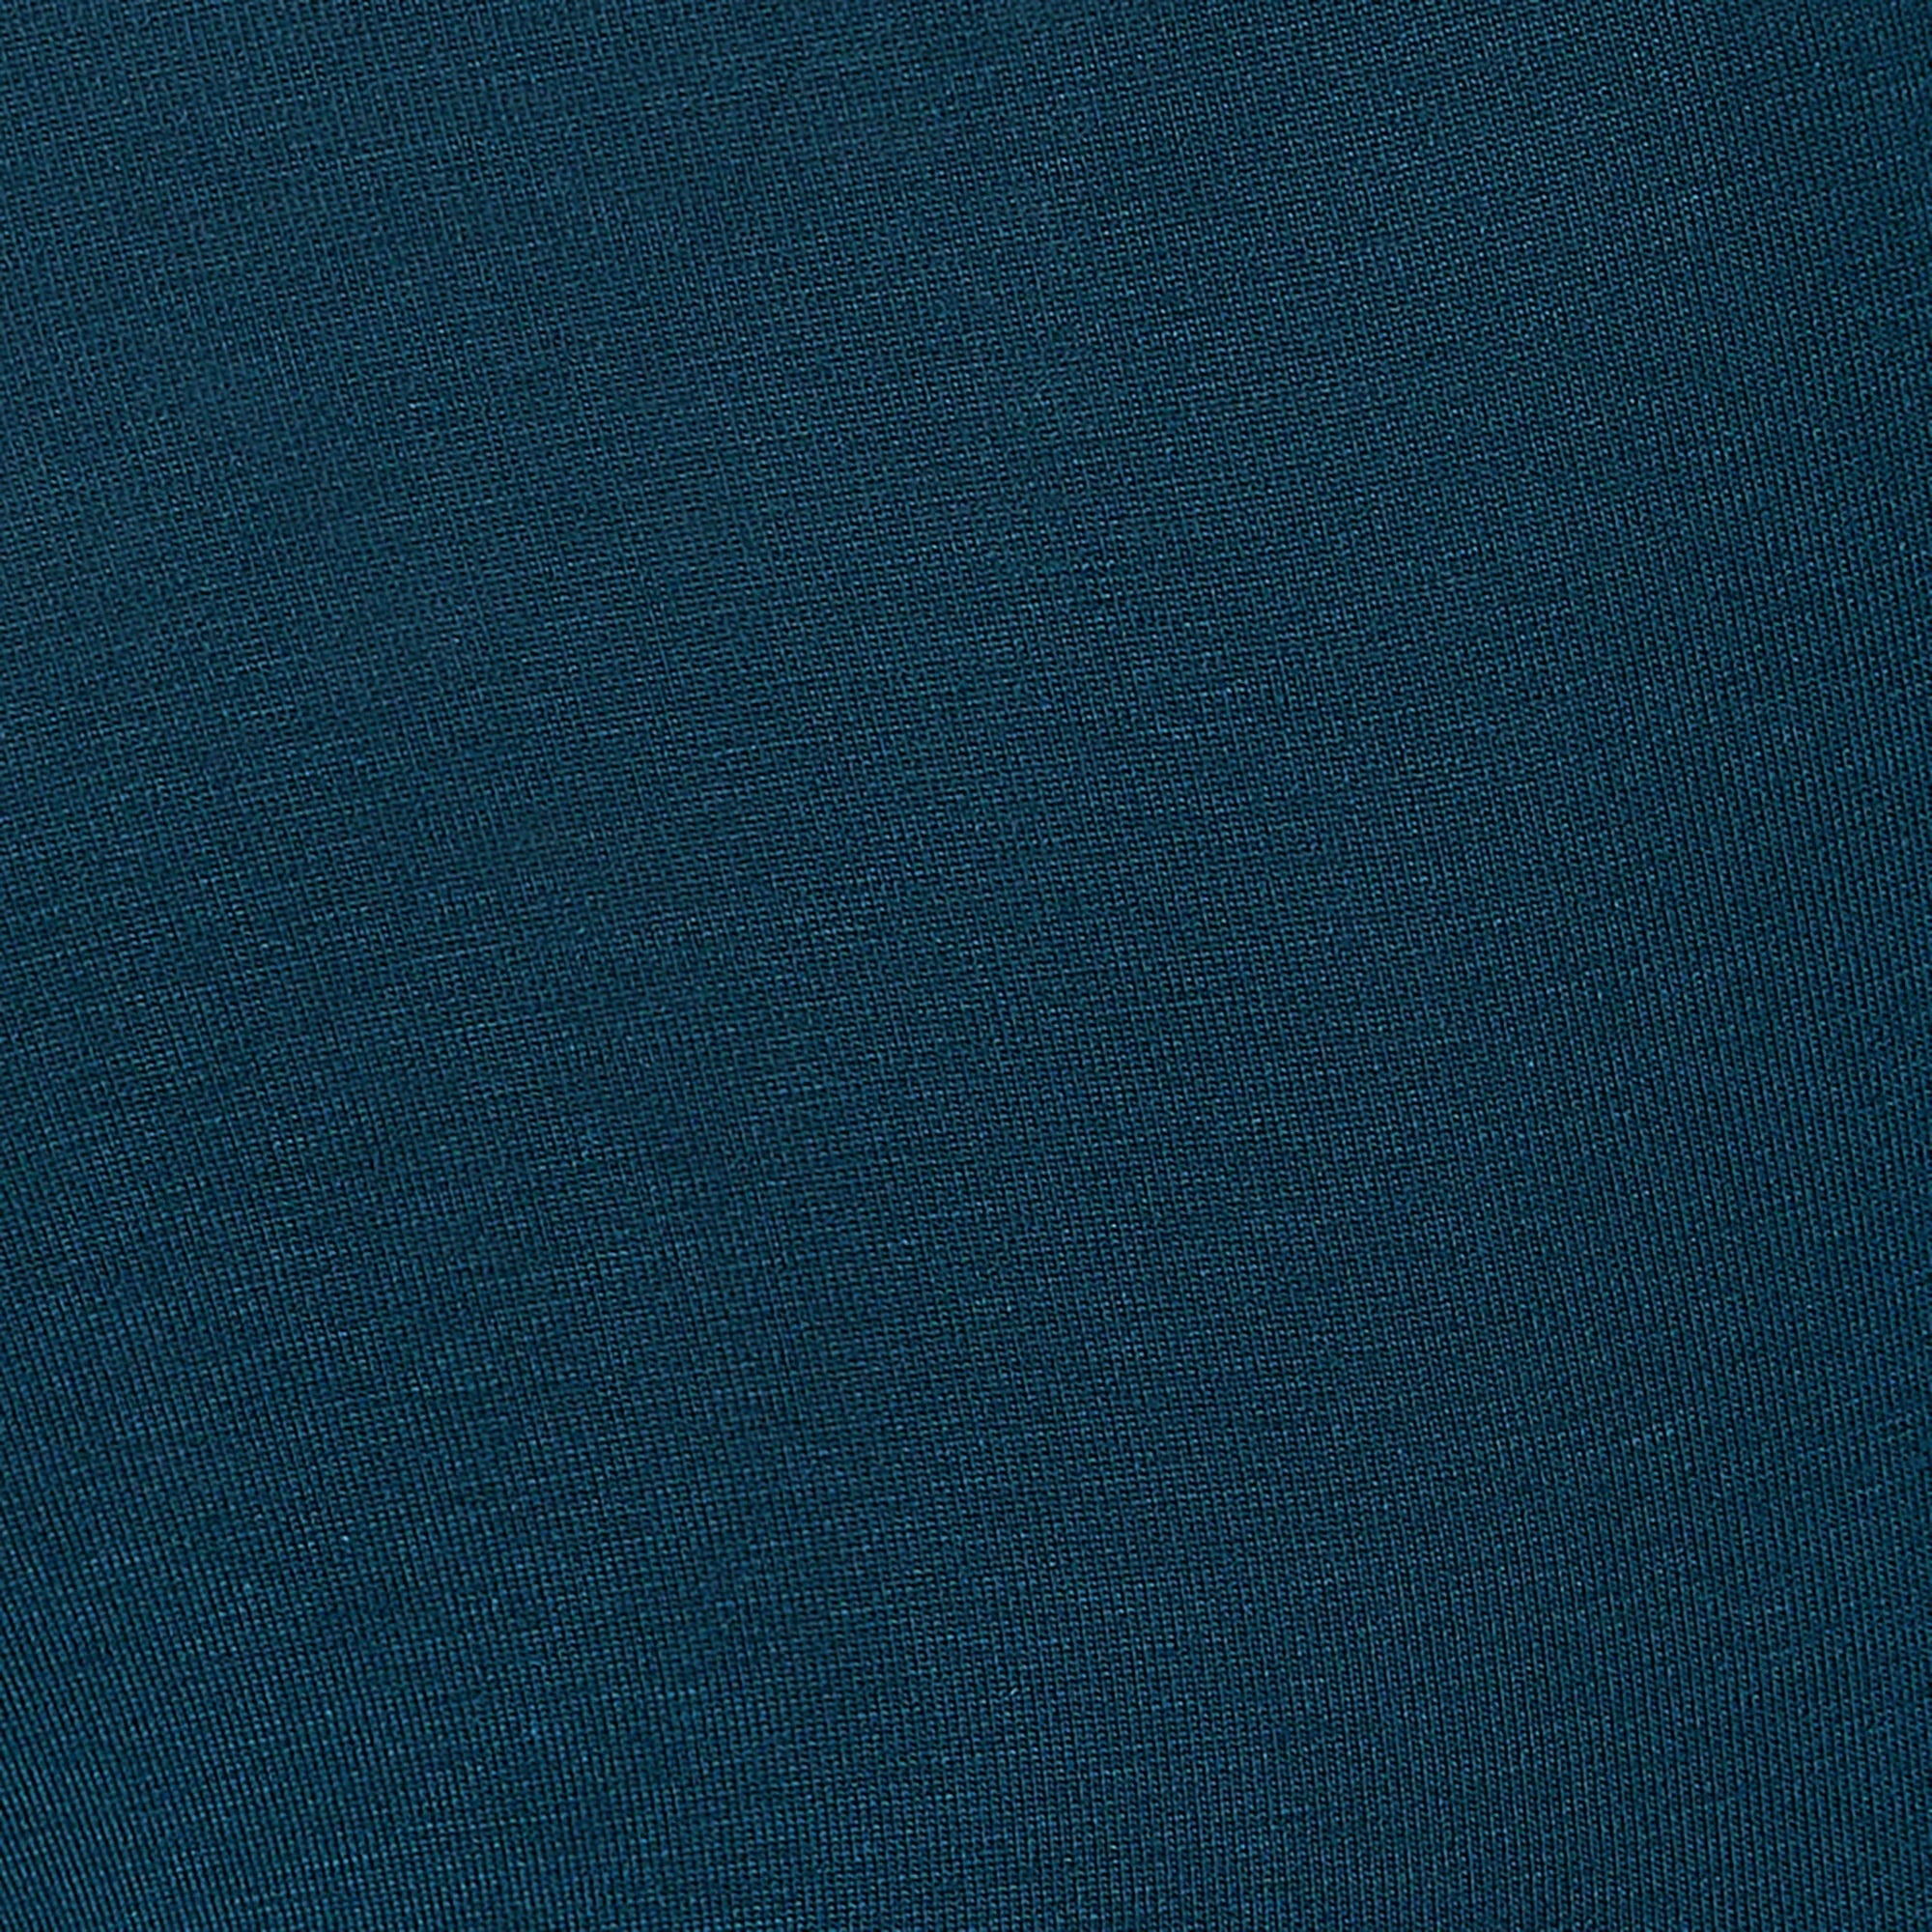 'SAXX Droptemp Cooling Cotton Boxer Brief - Deep Ocean' in 'Blue' colour